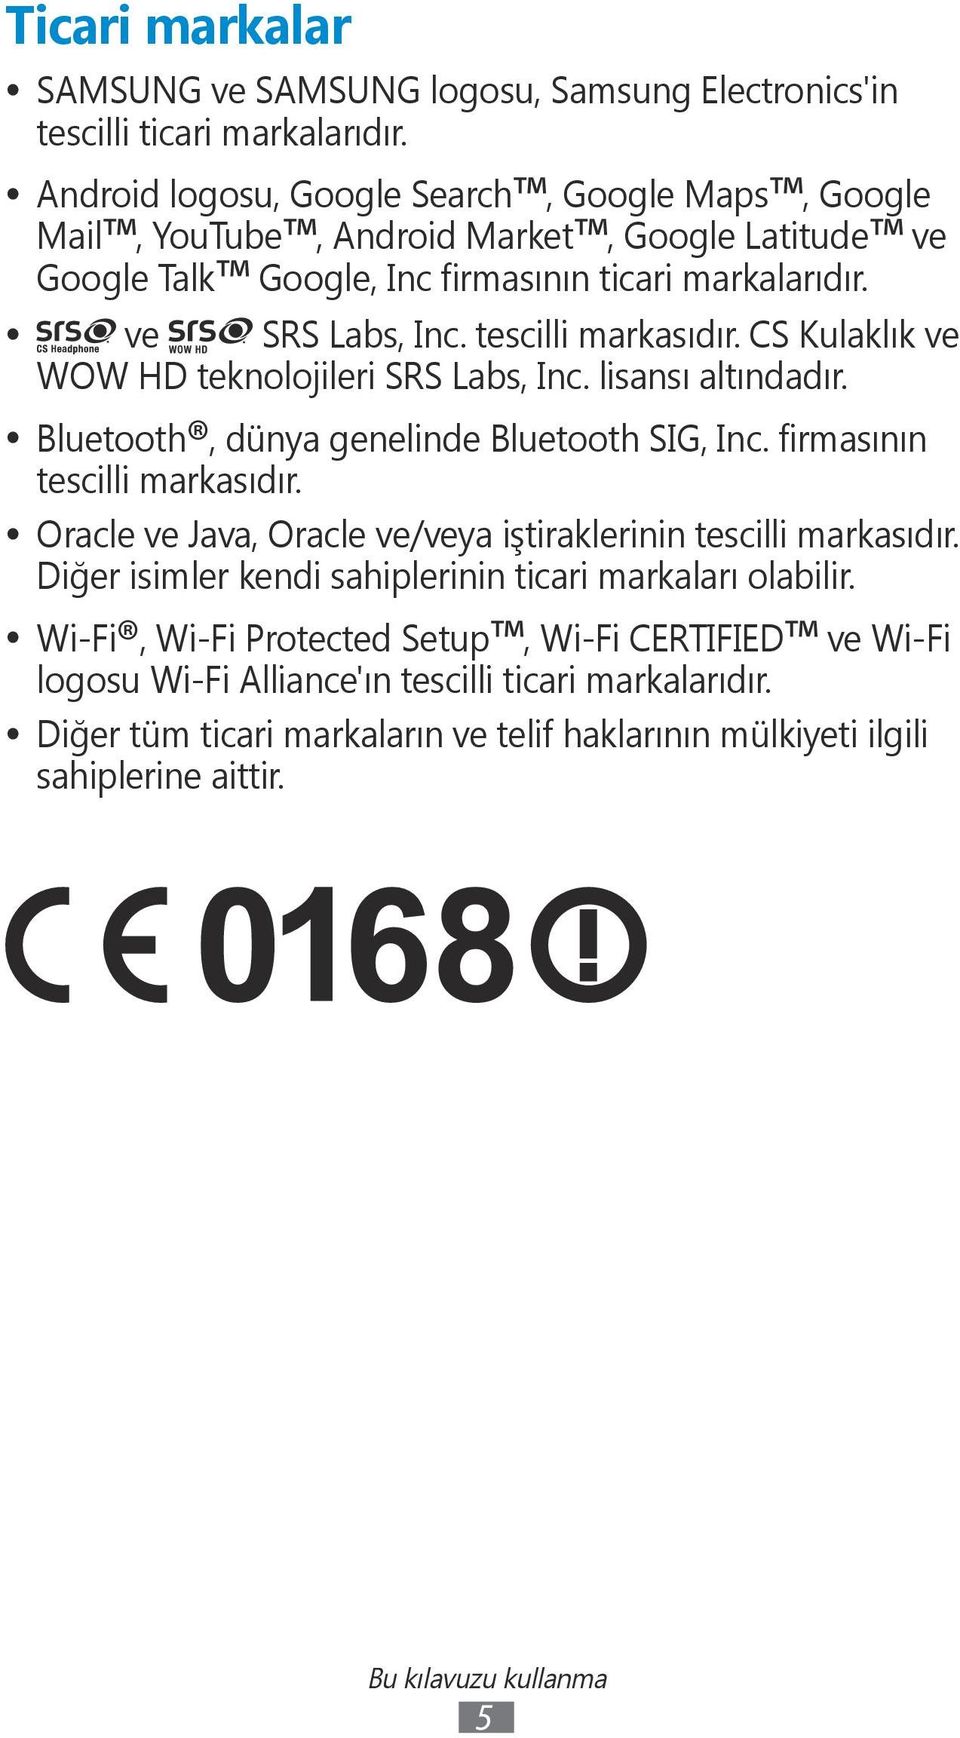 CS Kulaklık ve WOW HD teknolojileri SRS Labs, Inc. lisansı altındadır. Bluetooth, dünya genelinde Bluetooth SIG, Inc. firmasının tescilli markasıdır.